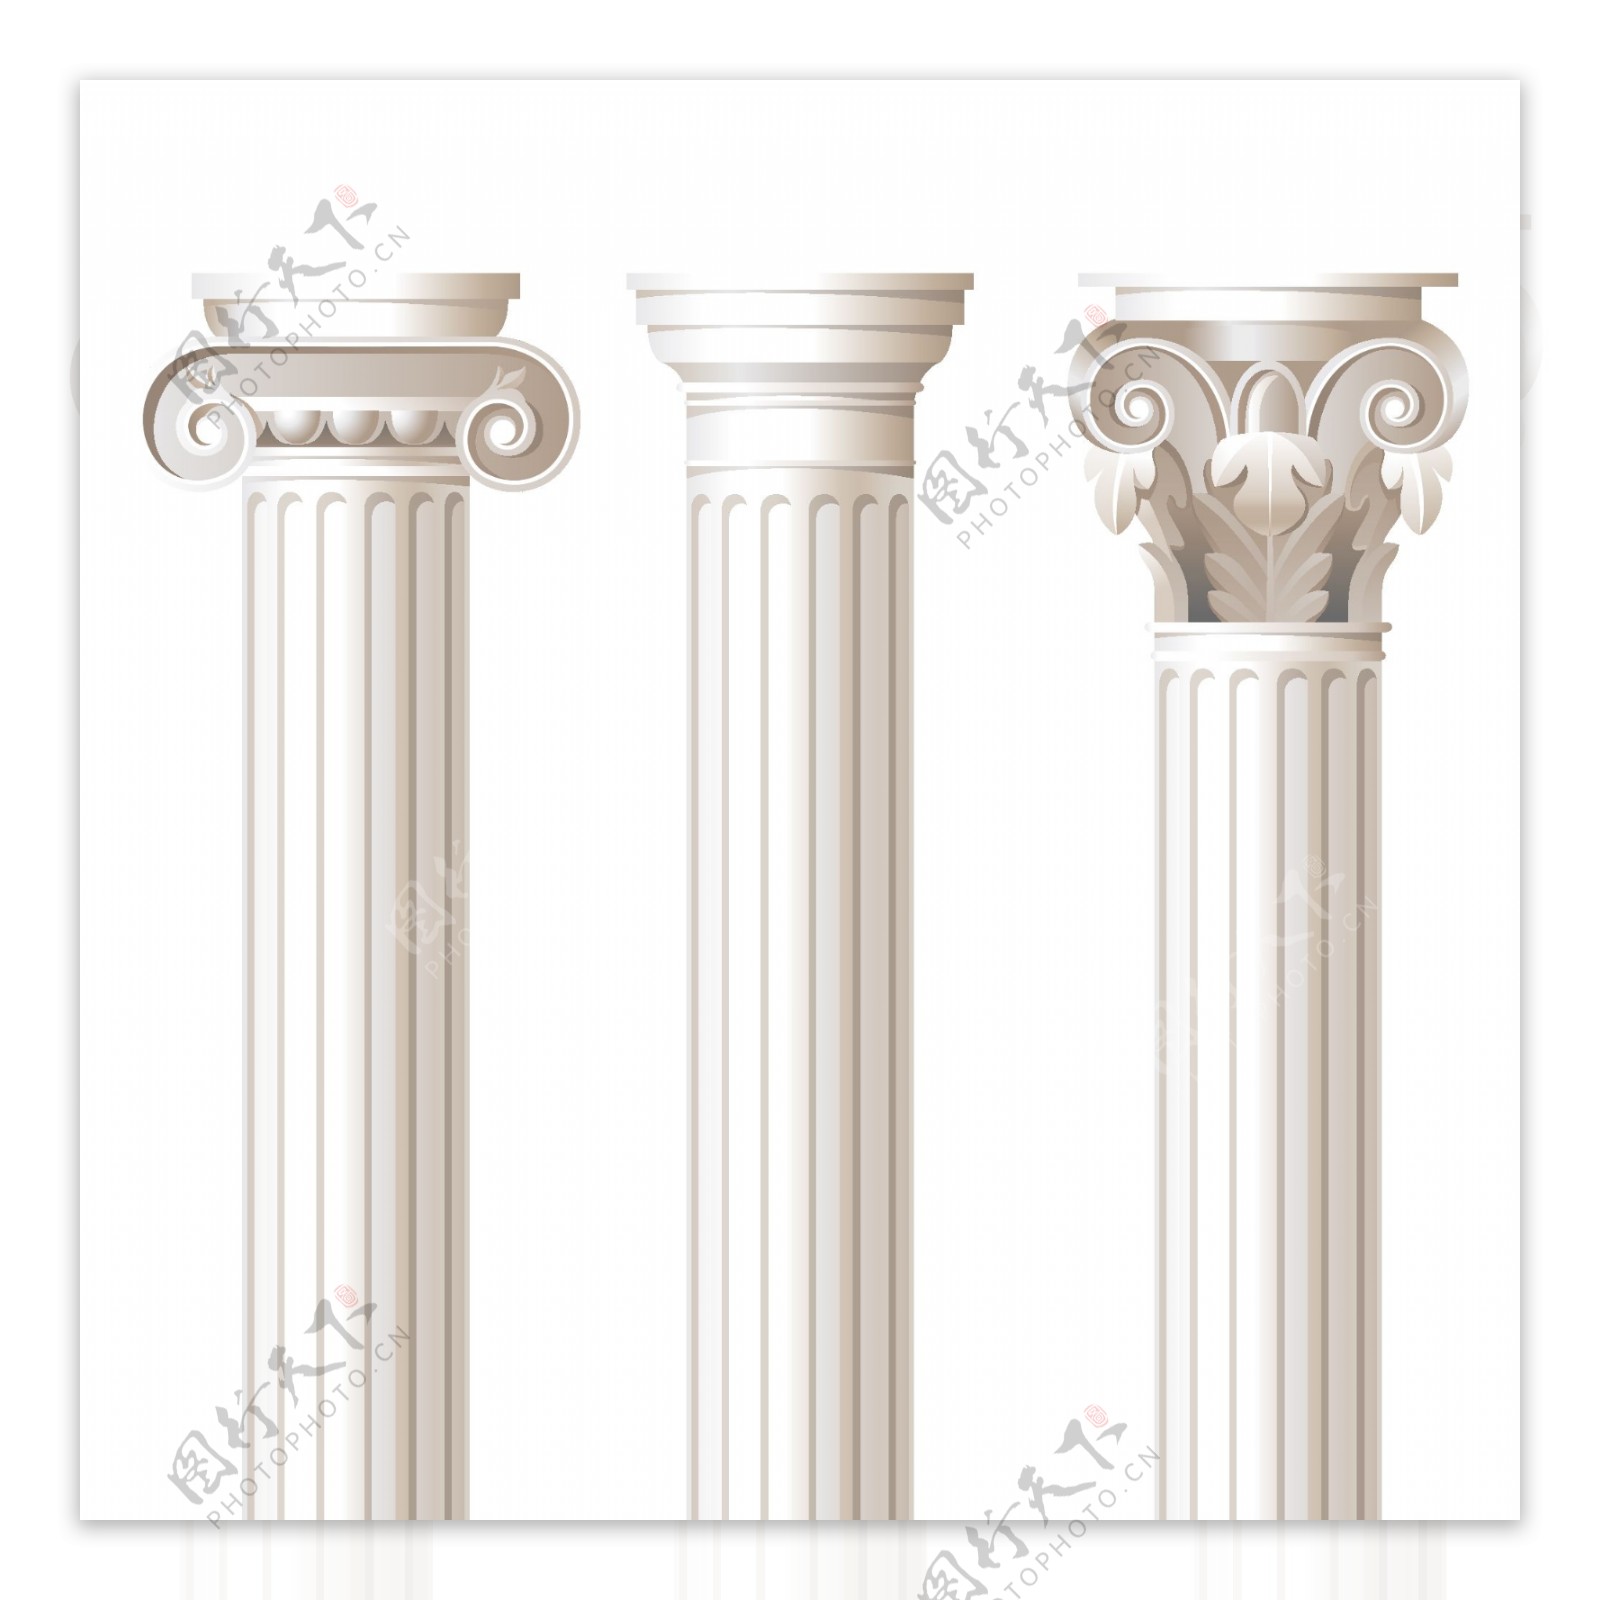 漂亮优雅的罗马柱